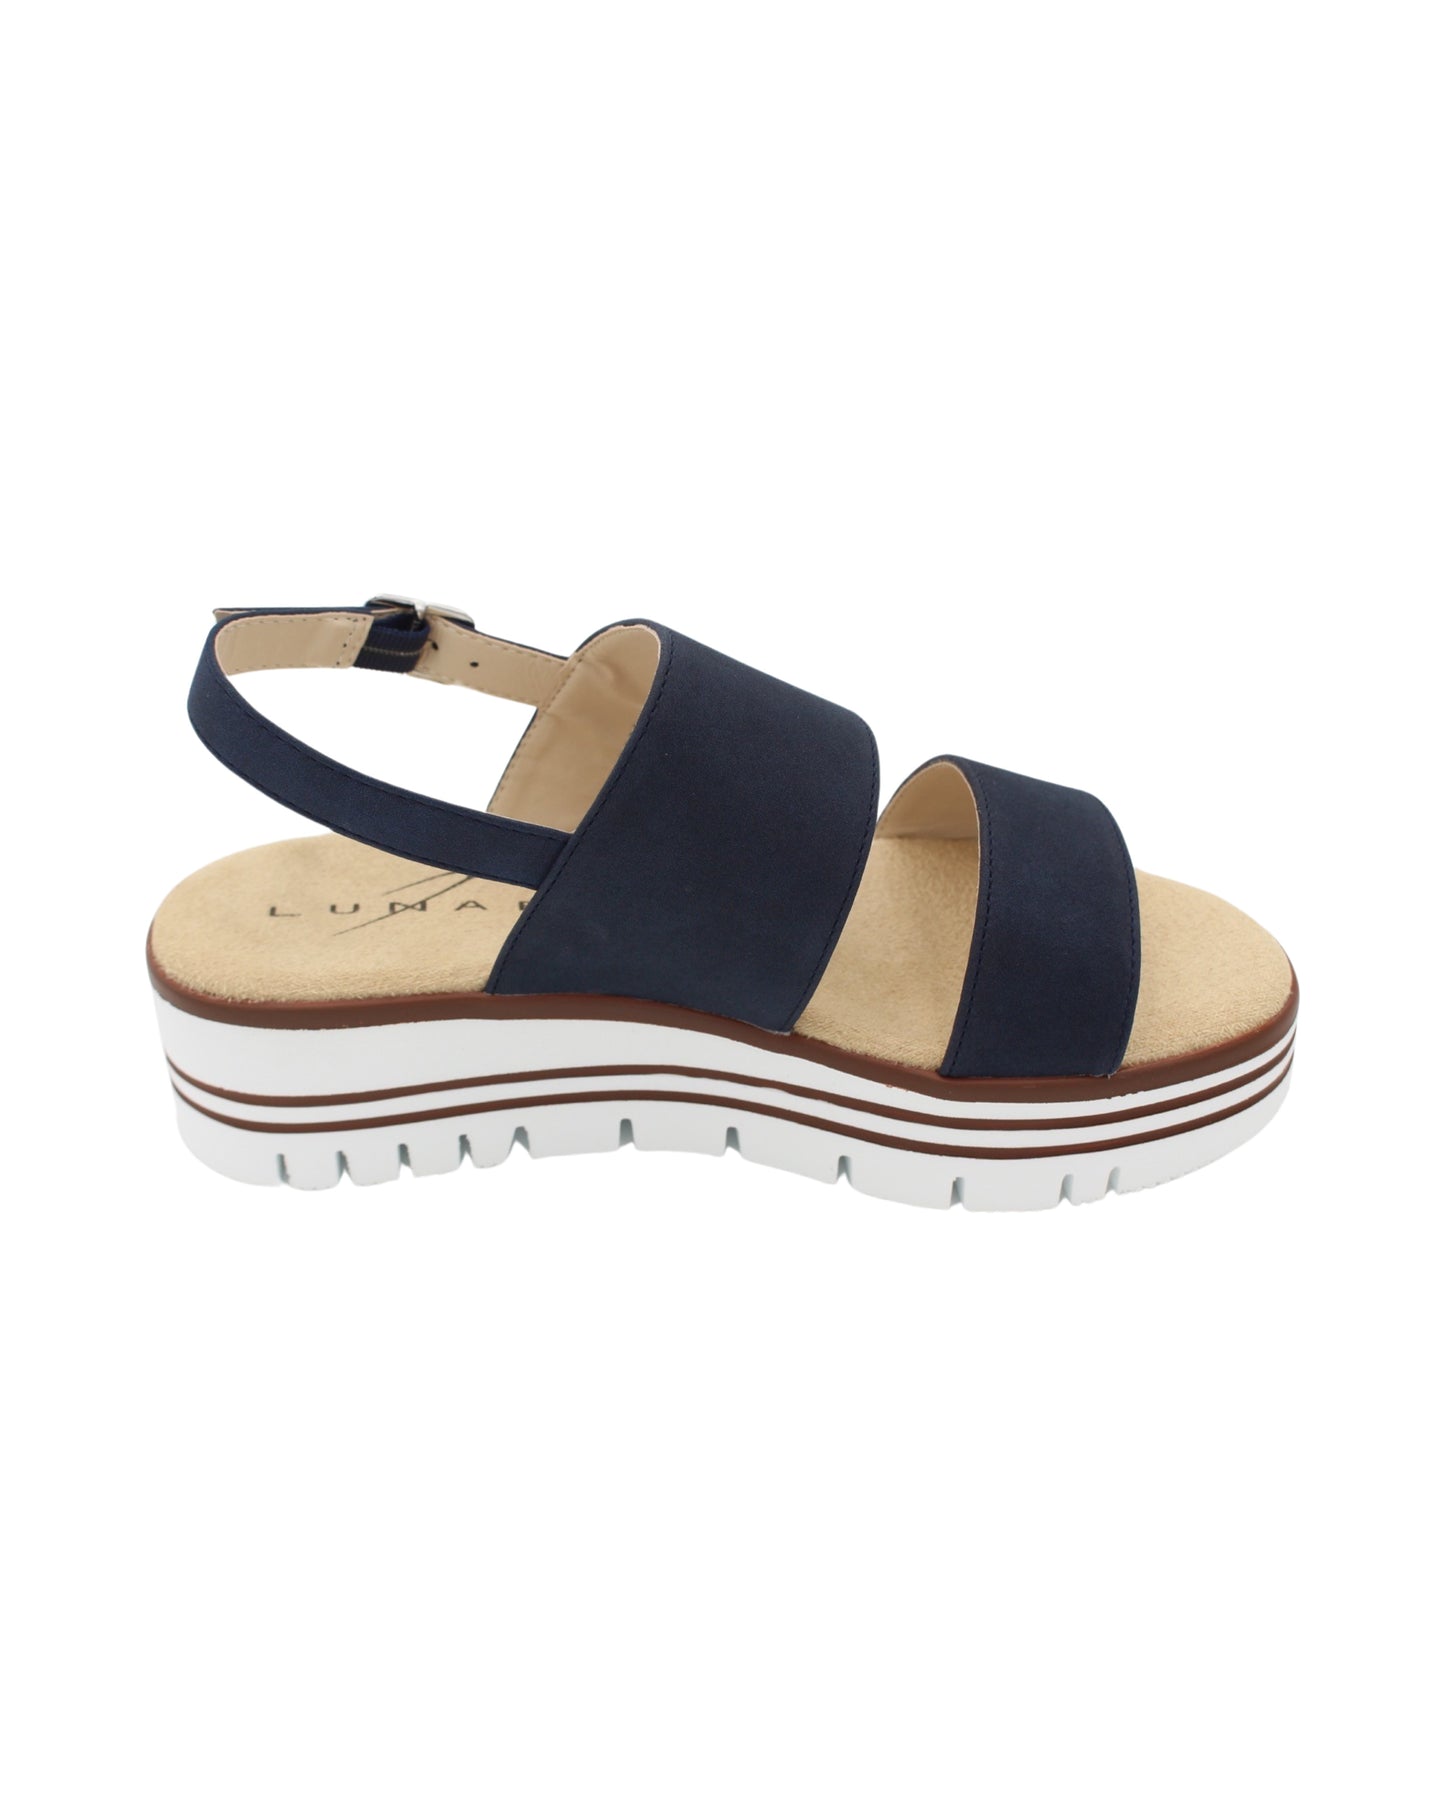 Lunar - Ladies Shoes Sandals Navy (2286)